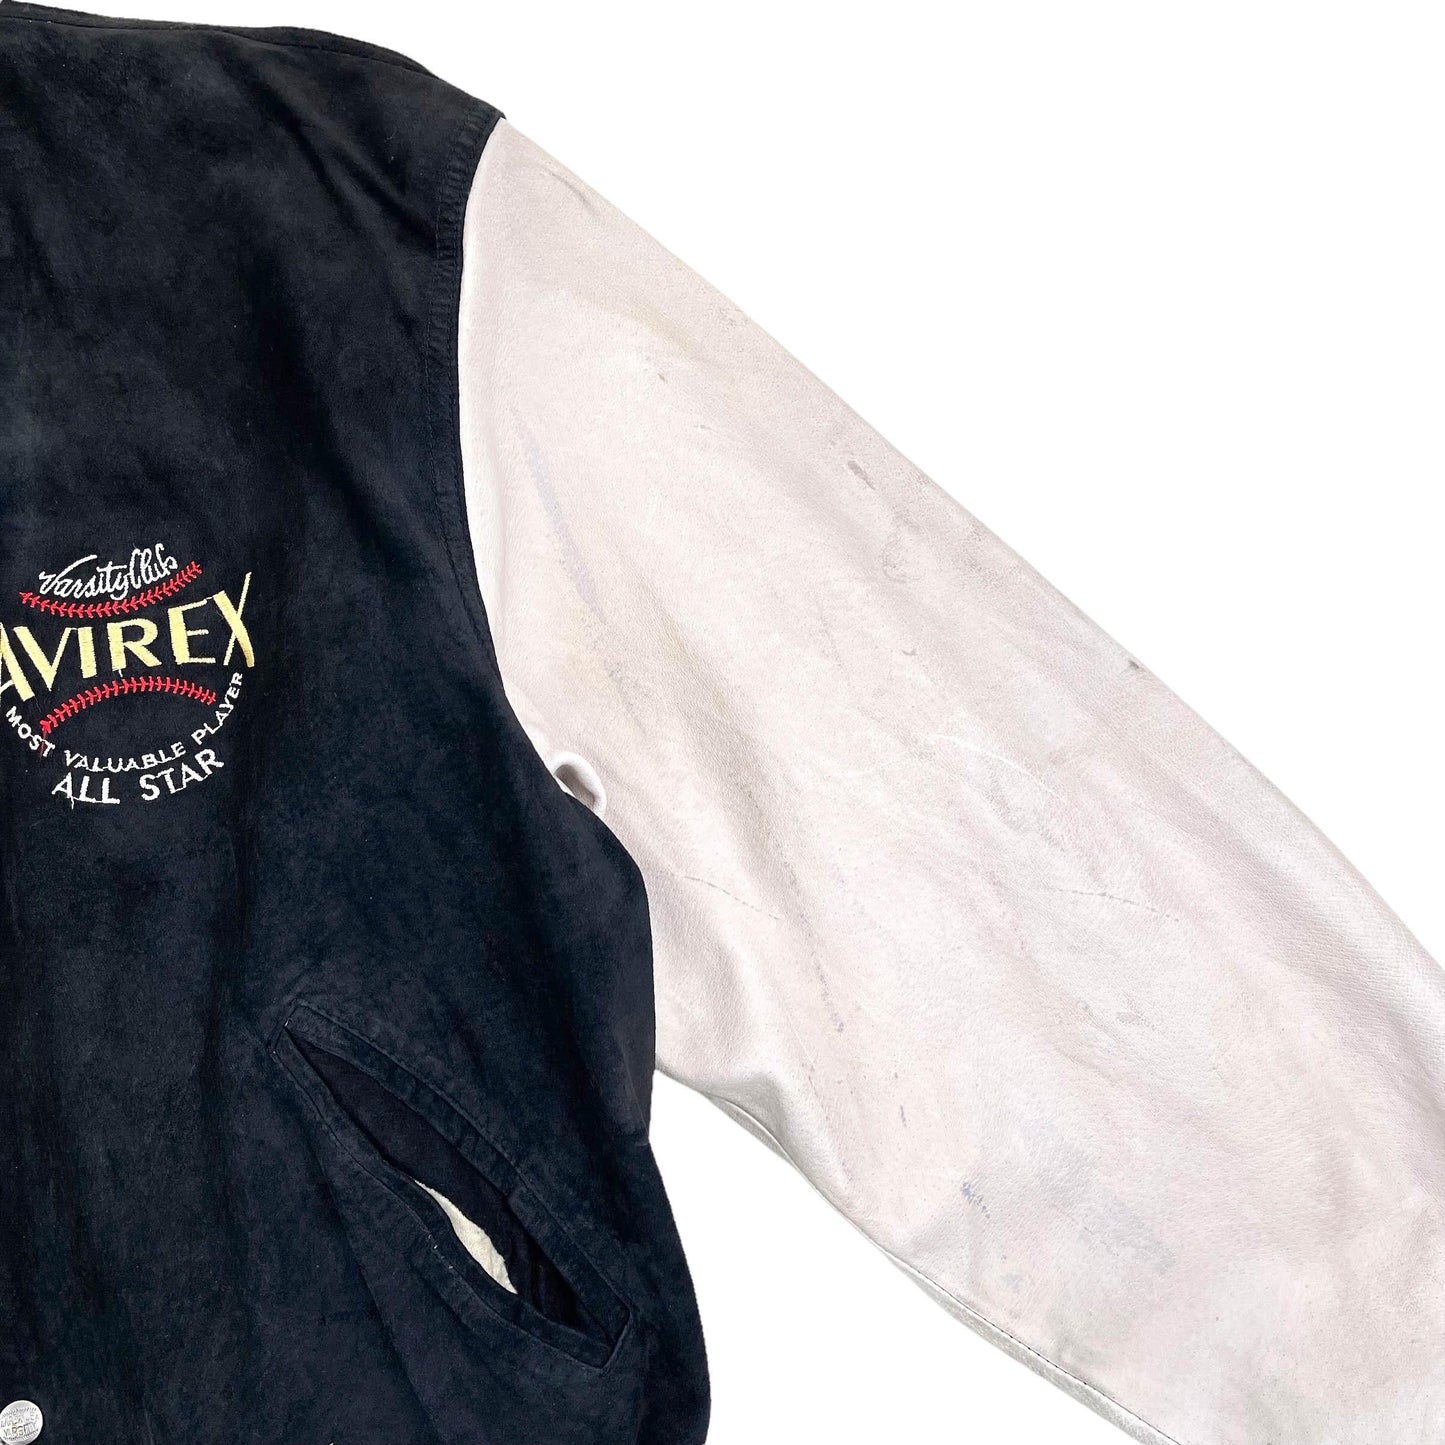 Vintage Avirex Jacket (XL) - Known Source